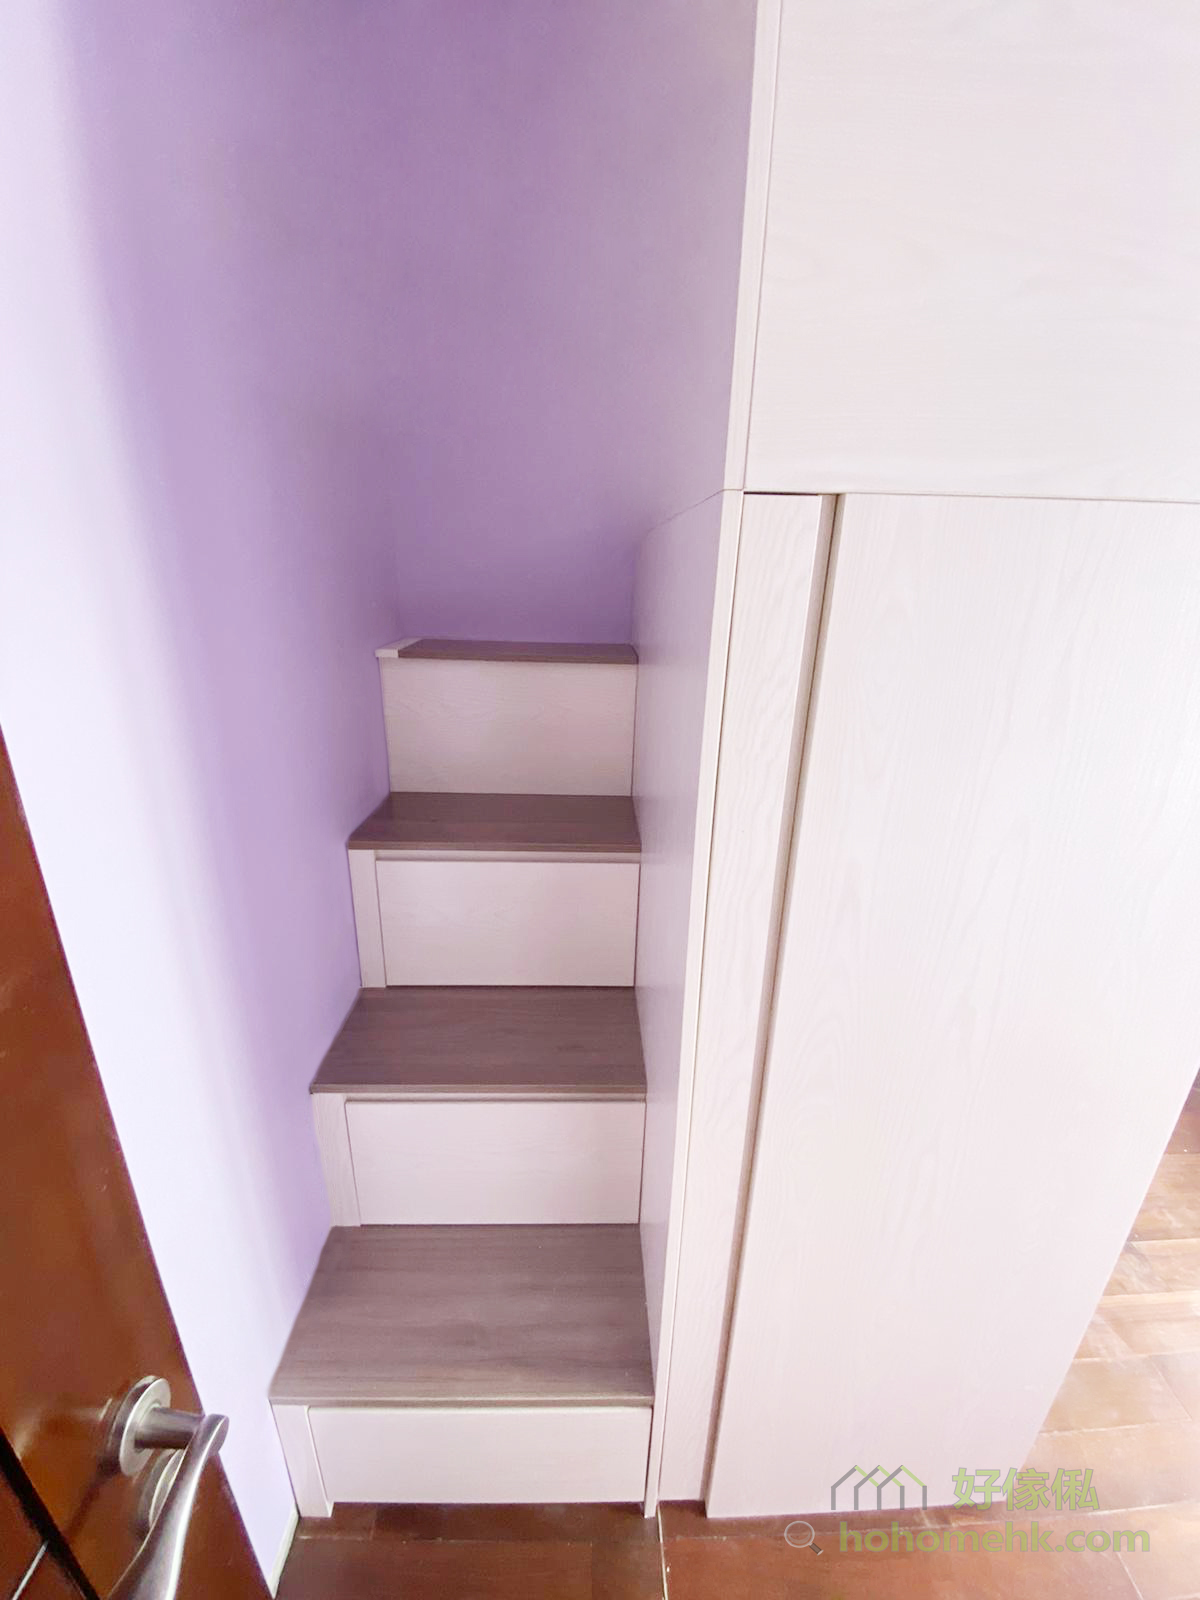 樓梯櫃收納分別有抽屜和上翻式揭板兩種，可按個人的收納習慣選擇使用哪一款。通常最高一級因深度最淺，都會使用上翻式揭板，更好地運用樓梯下的隱形收納空間